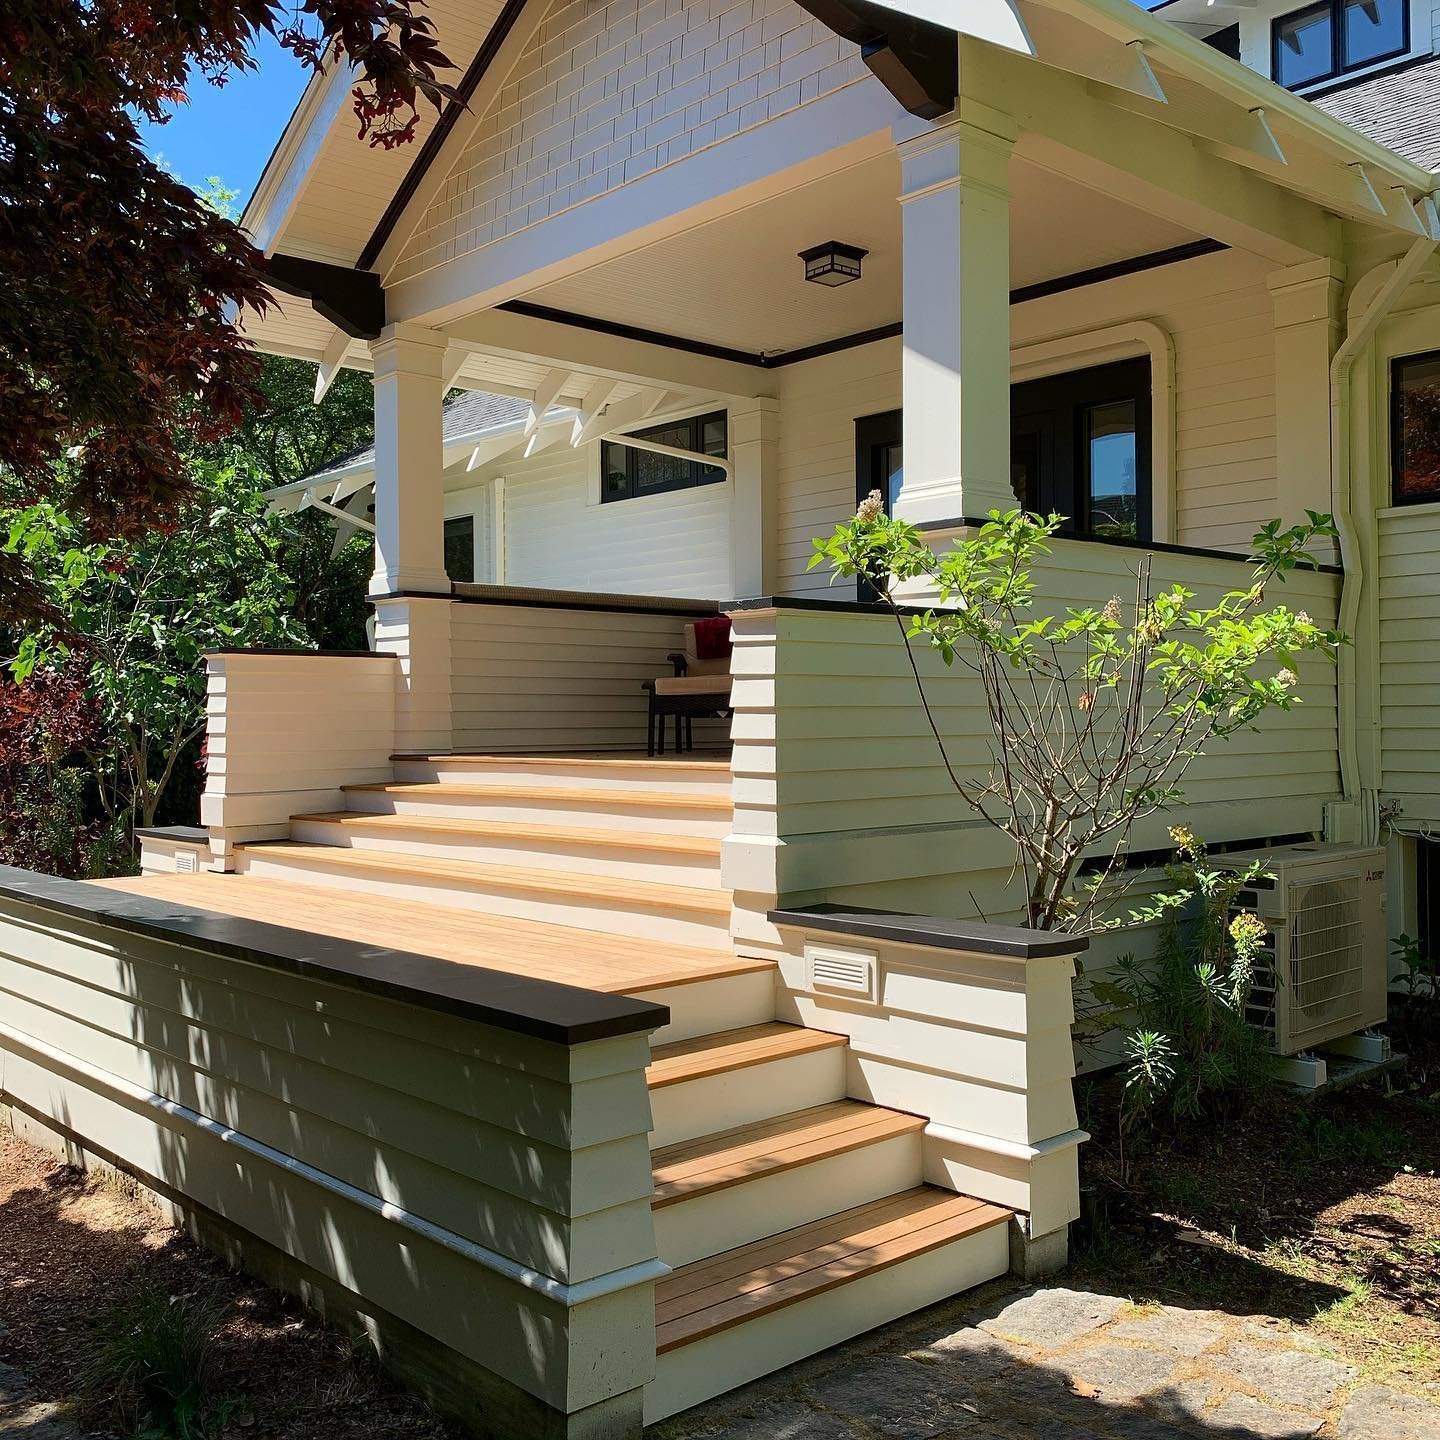 Deck build in Portland, Oregon.